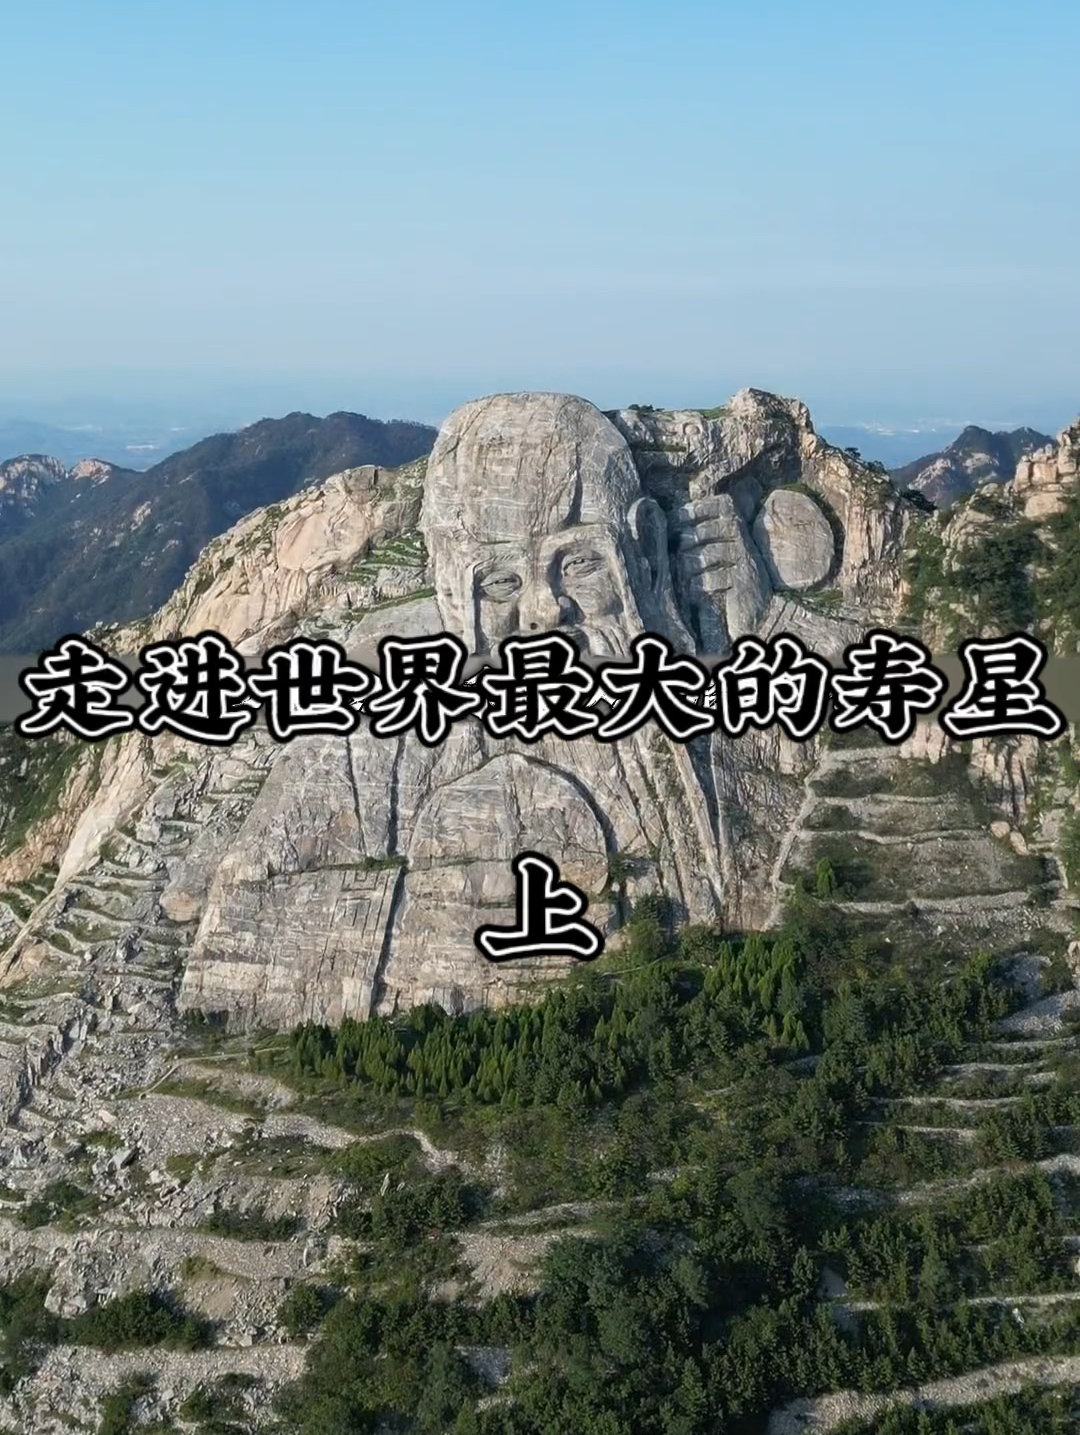 一起去看看世界最大的寿星 #旅游推荐官 #旅游达人带你游 #世界最大寿星 #广西旅游景点